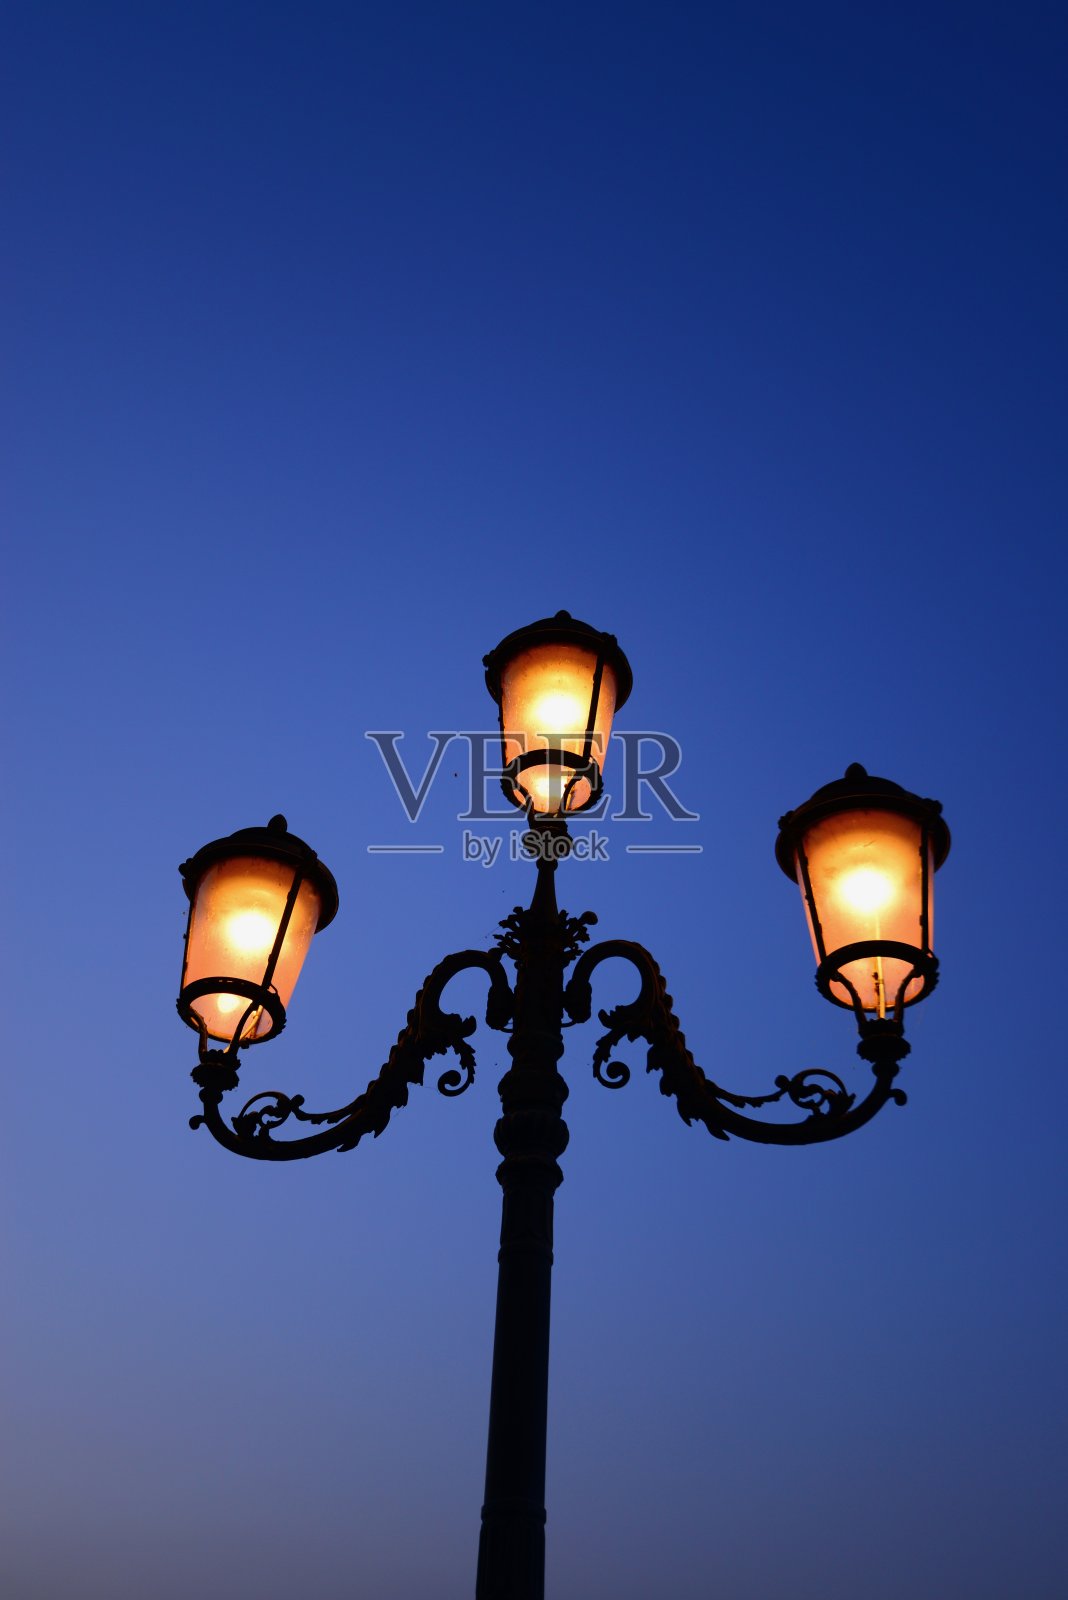 威尼斯的街灯照片摄影图片